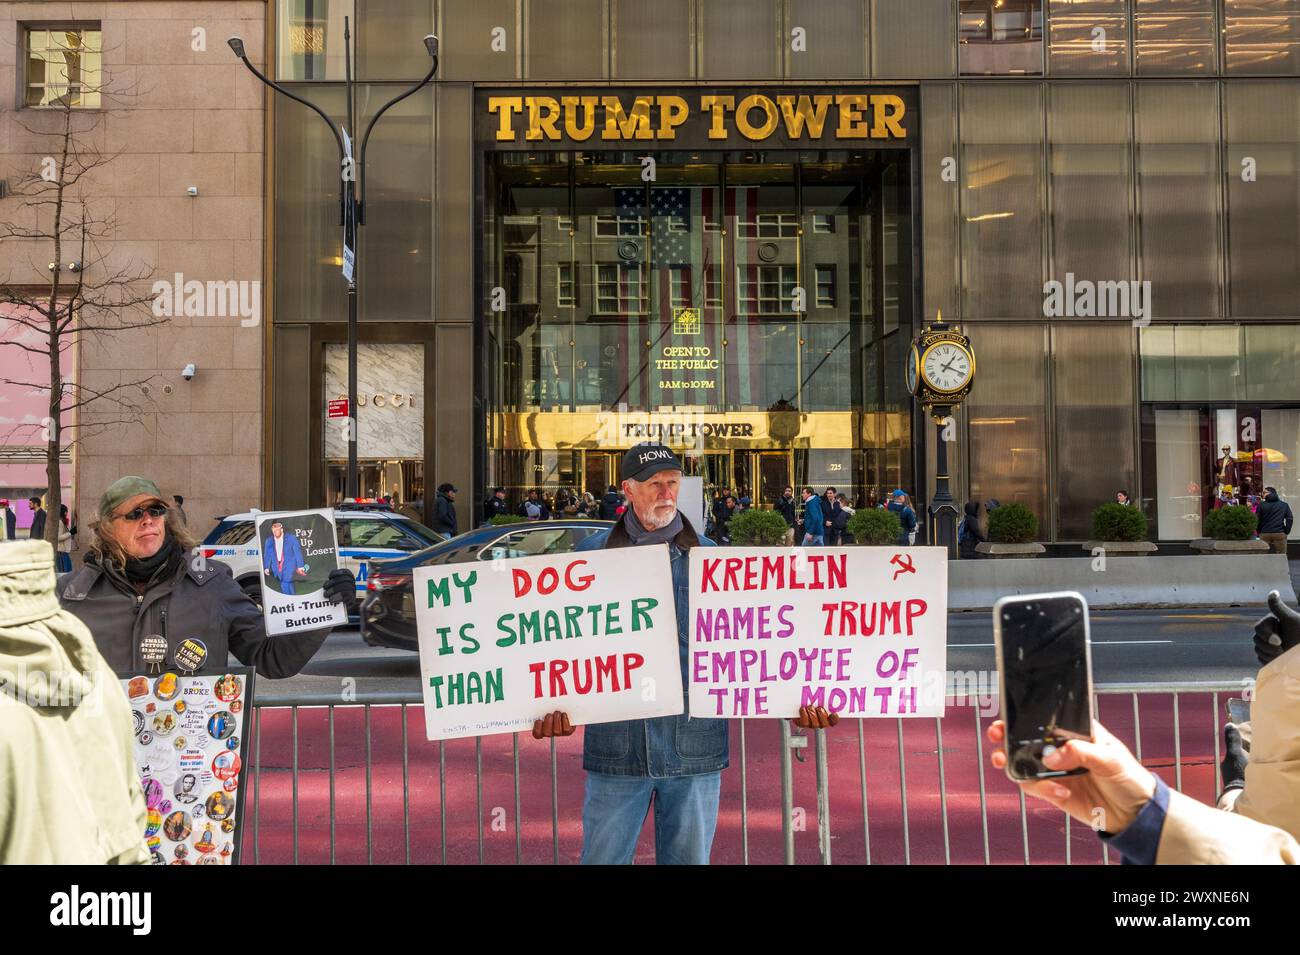 La façade du bâtiment Trump Tower 721–725 Fifth Avenue dans le quartier Midtown Manhattan de New York, Banque D'Images